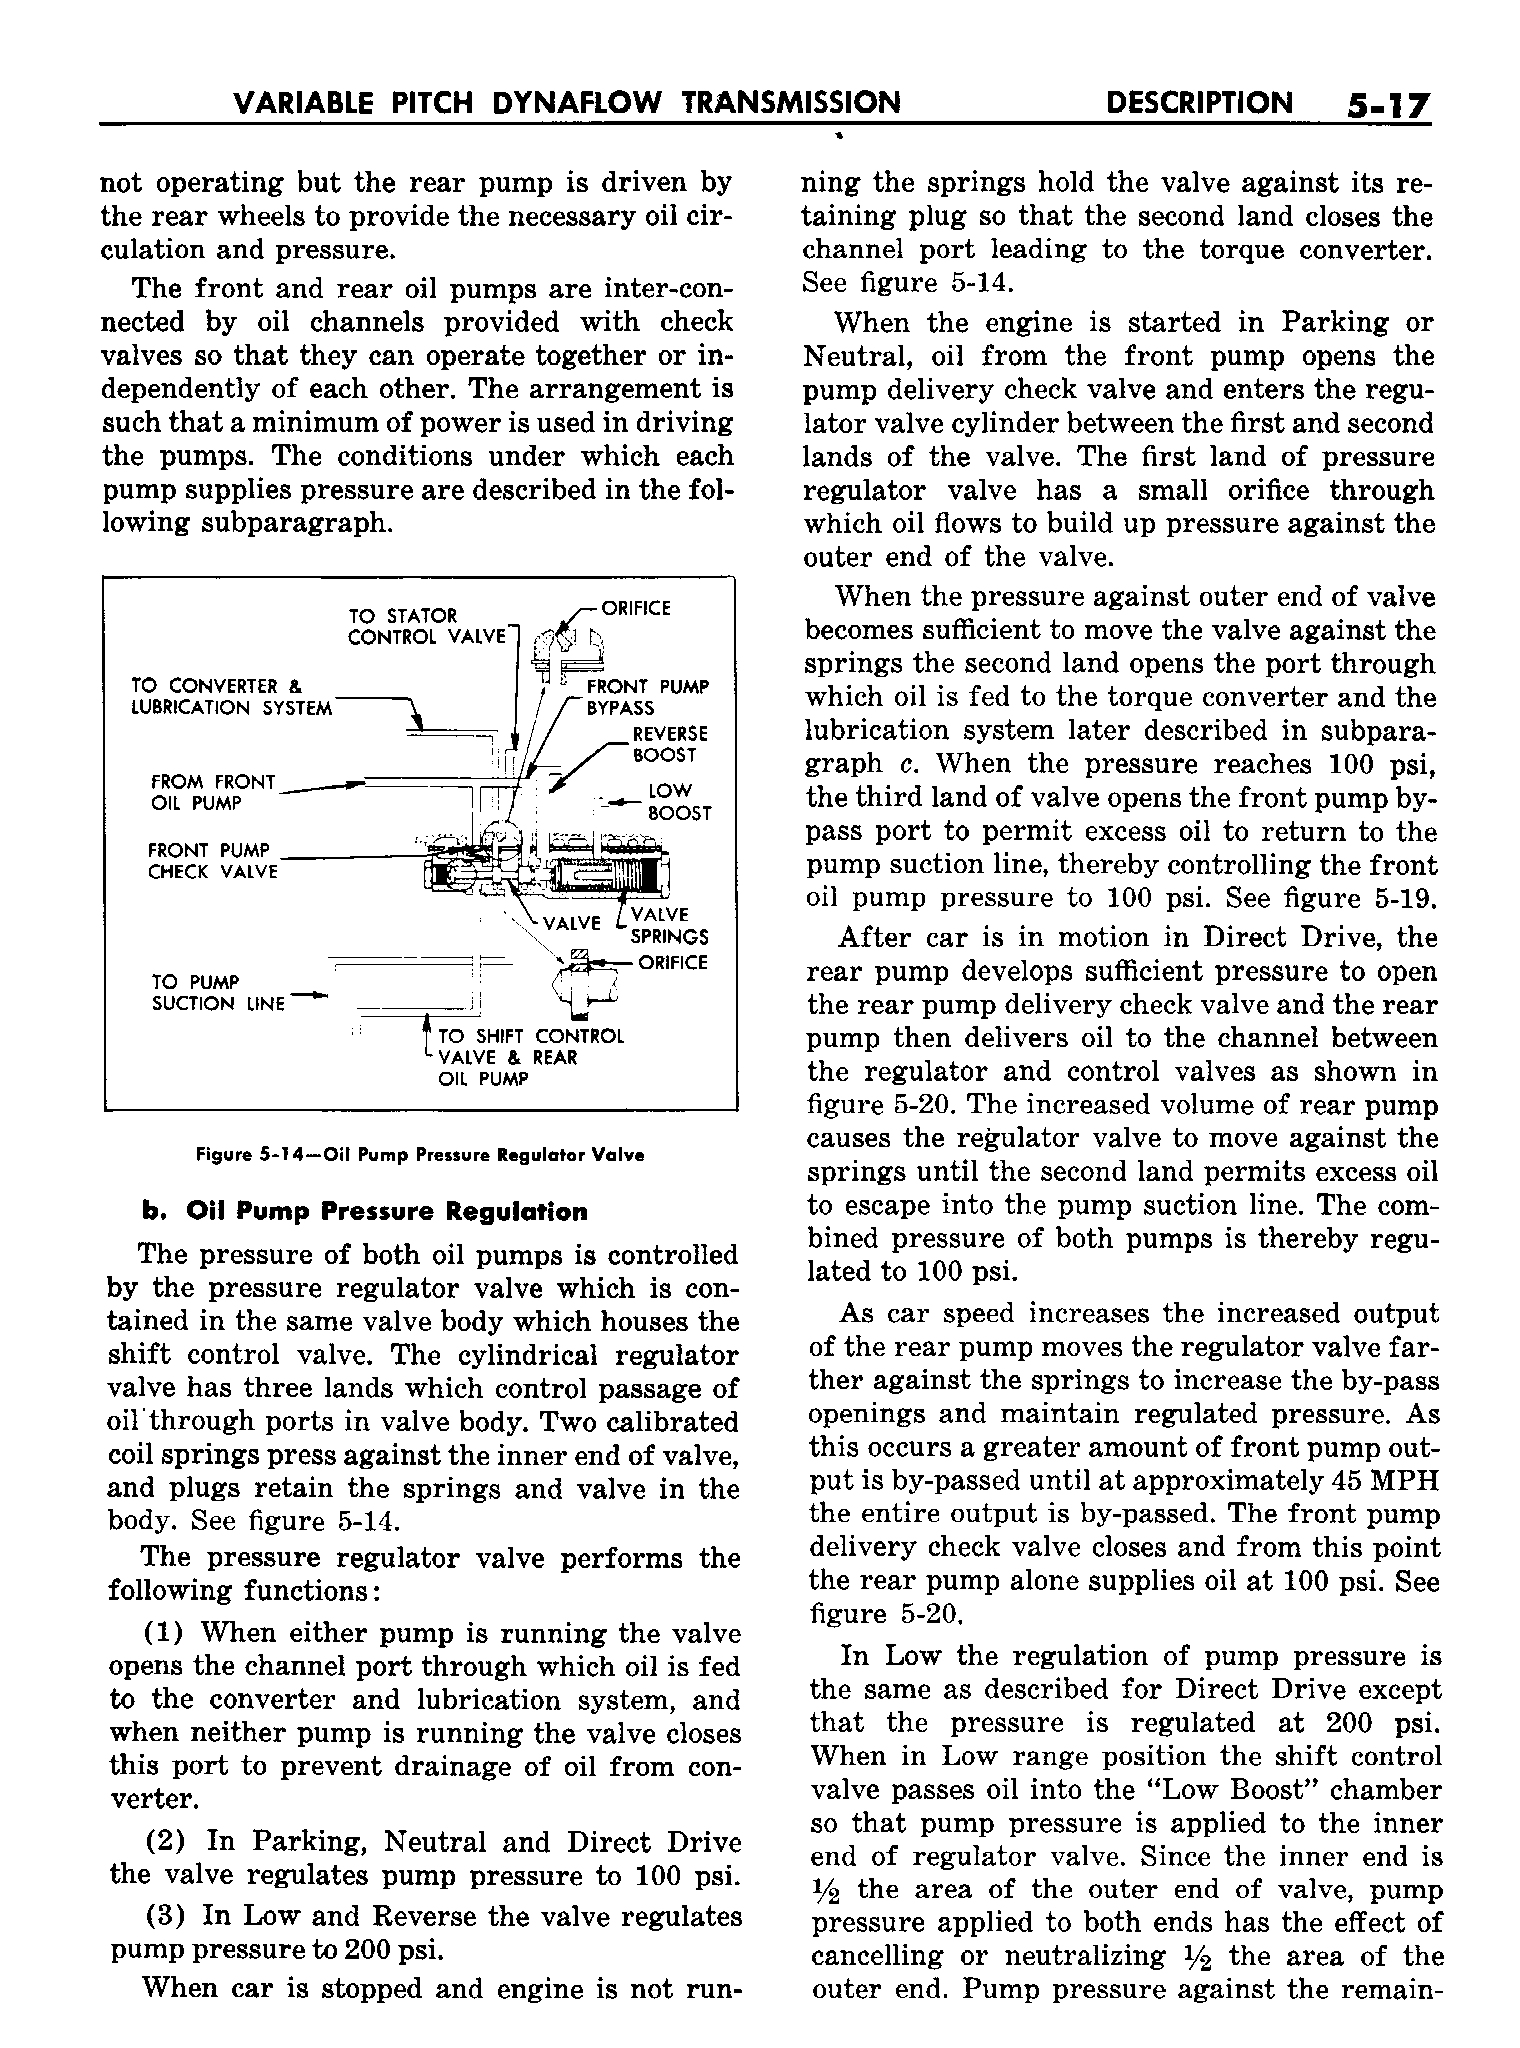 n_06 1958 Buick Shop Manual - Dynaflow_17.jpg